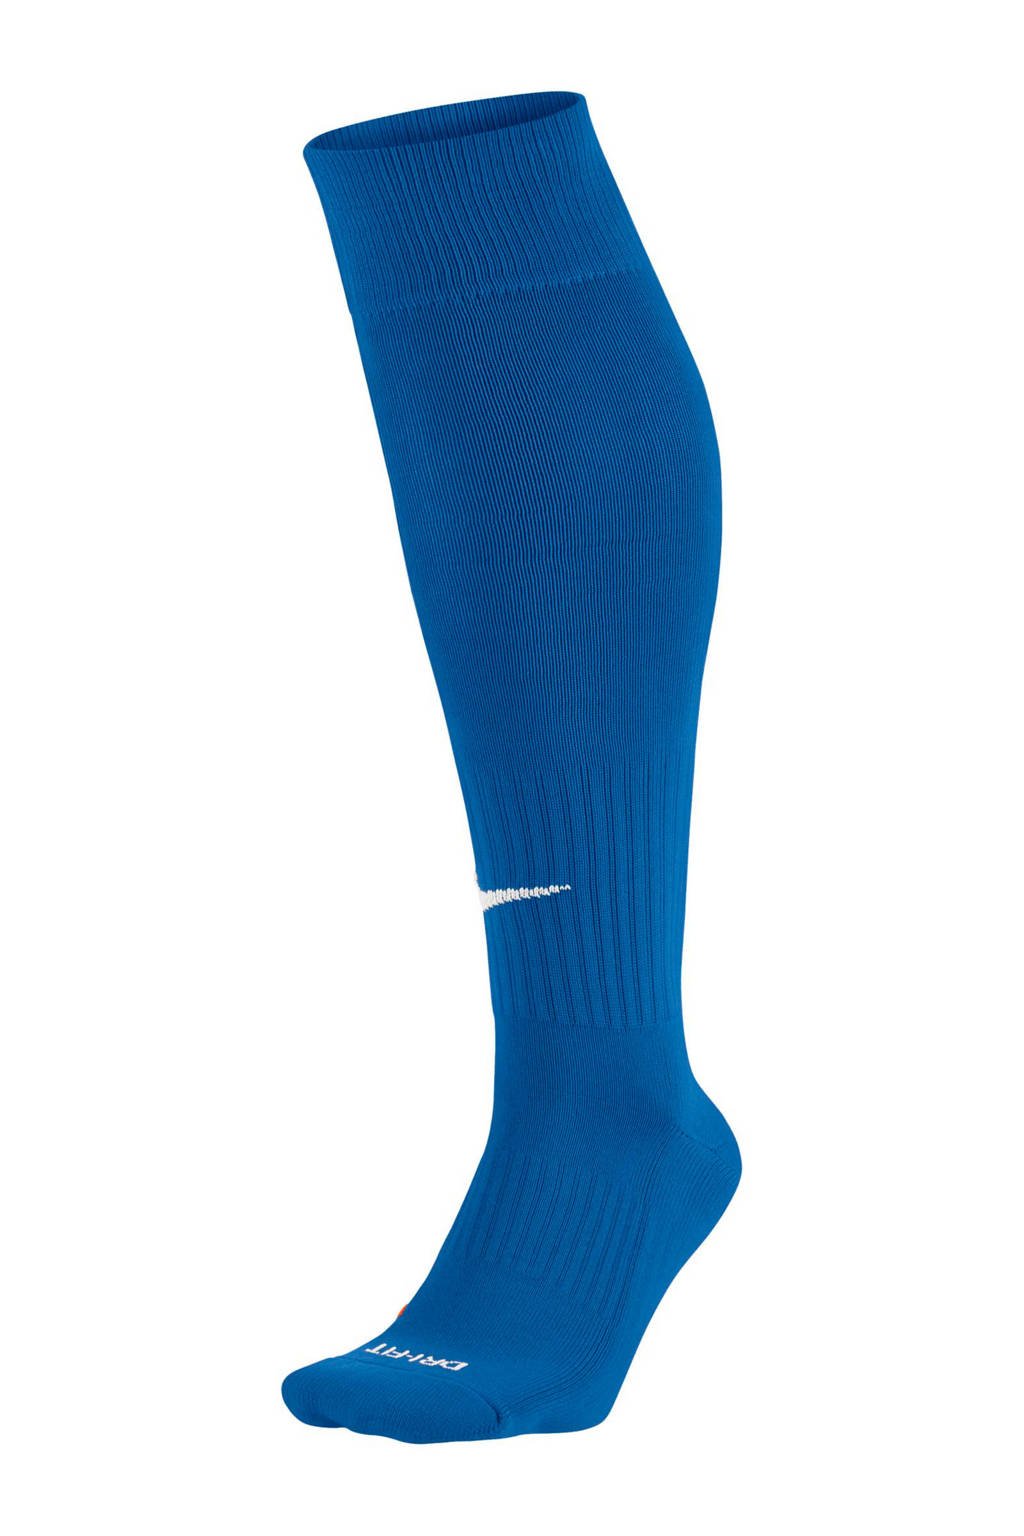 Nike   voetbalsokken blauw